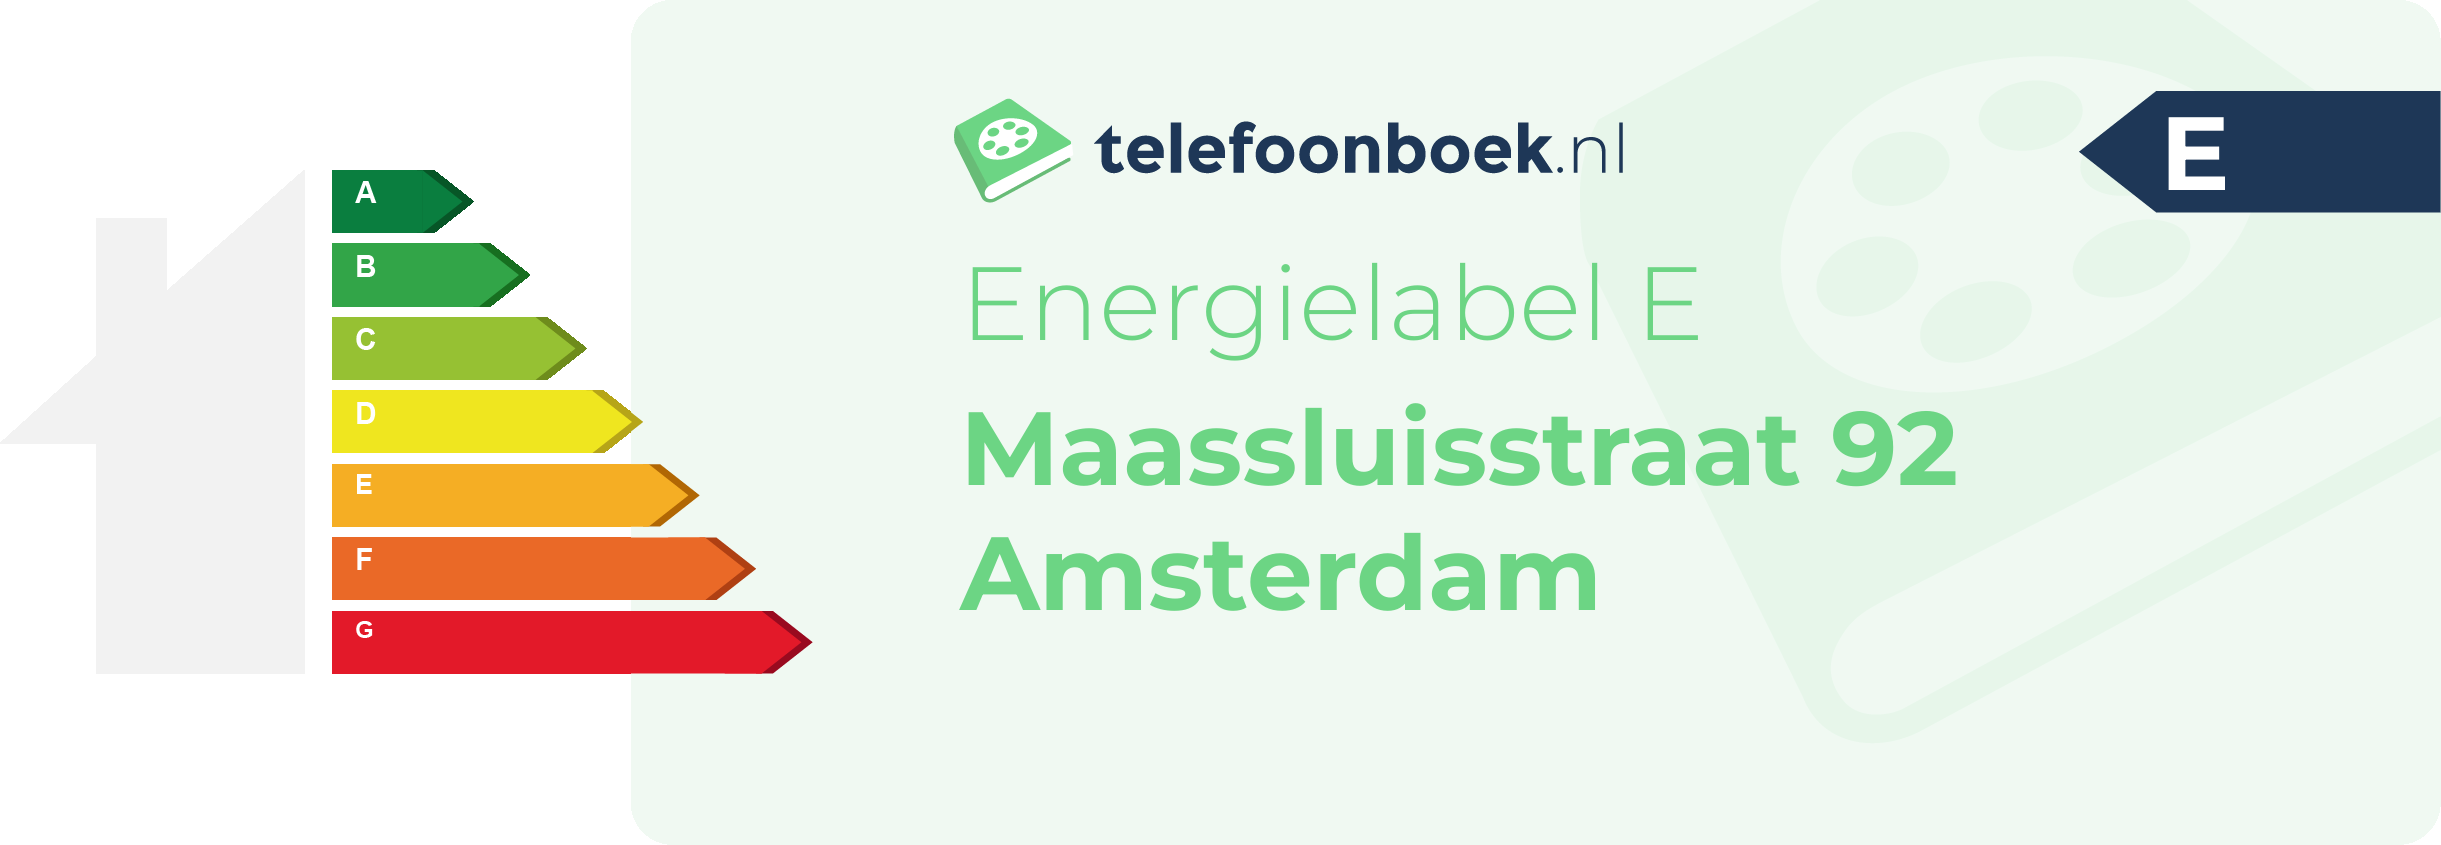 Energielabel Maassluisstraat 92 Amsterdam